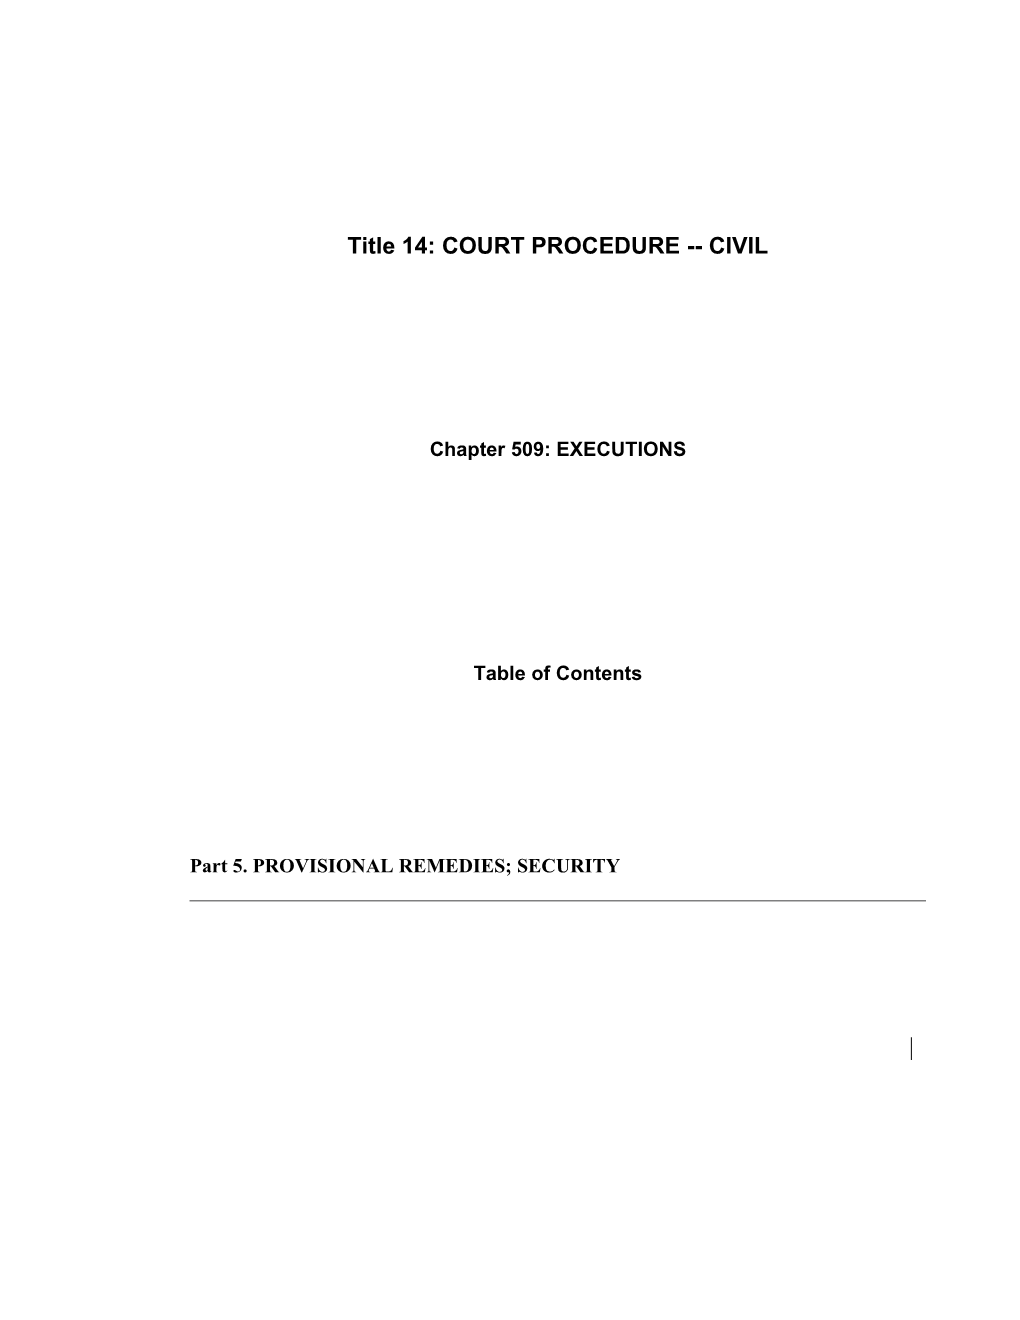 Title 14: COURT PROCEDURE CIVIL